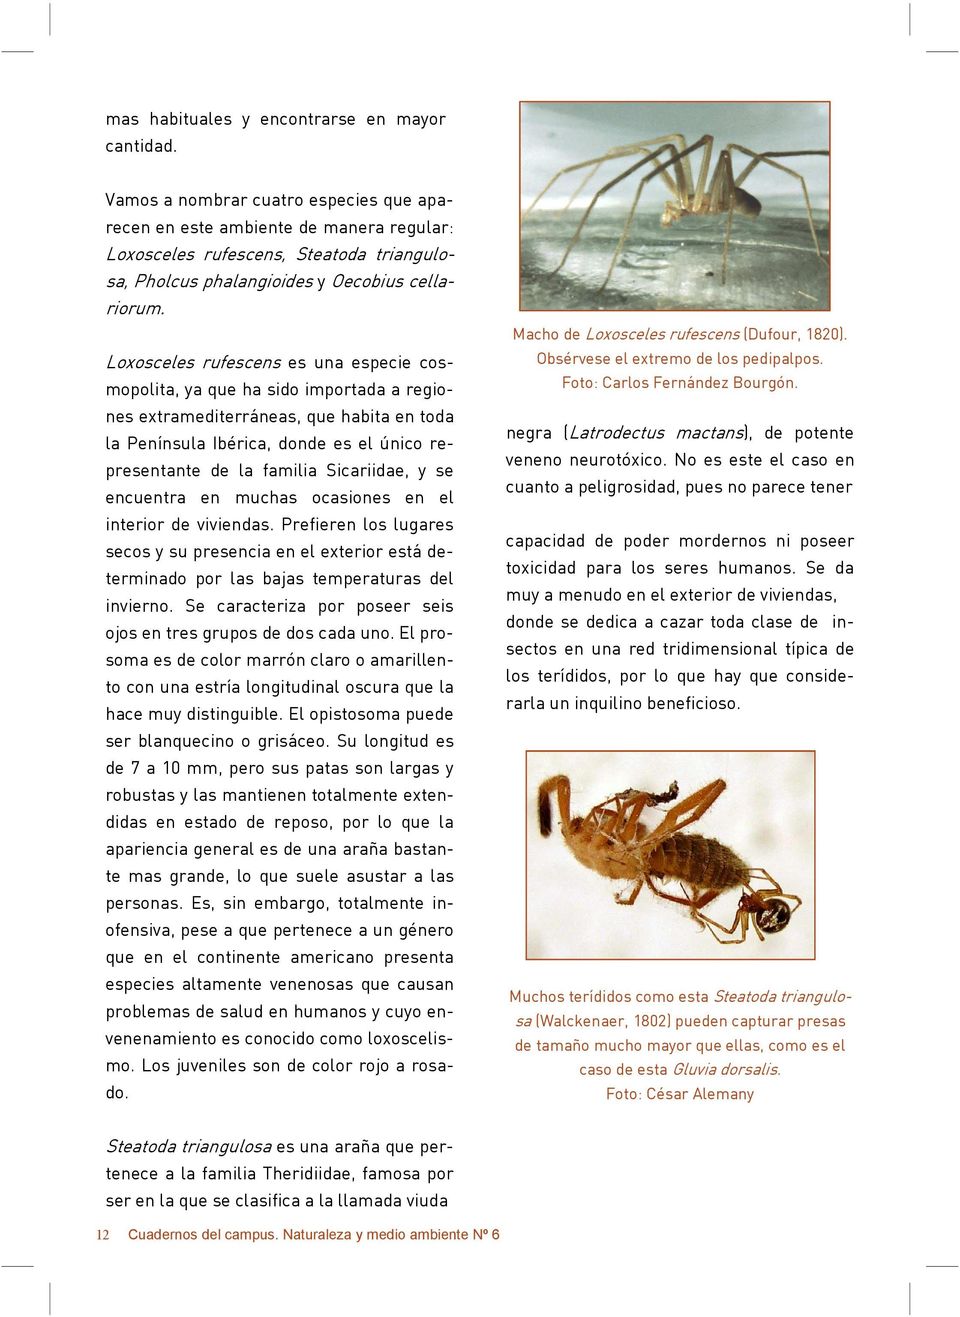 Loxosceles rufescens es una especie cosmopolita, ya que ha sido importada a regiones extramediterráneas, que habita en toda la Península Ibérica, donde es el único representante de la familia